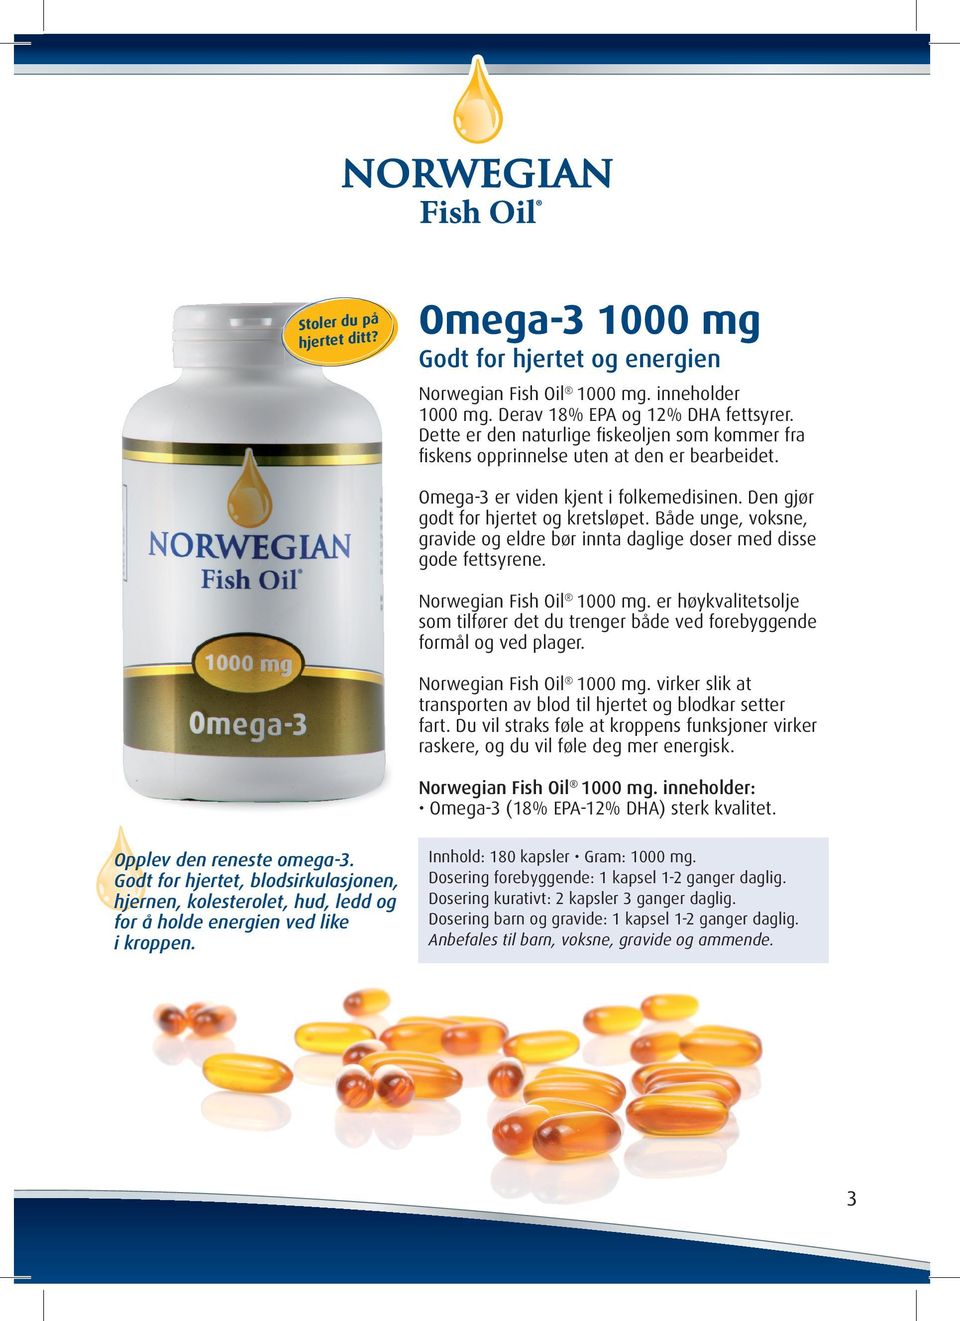 Både unge, voksne, gravide og eldre bør innta daglige doser med disse gode fettsyrene. Norwegian Fish Oil 1000 mg.